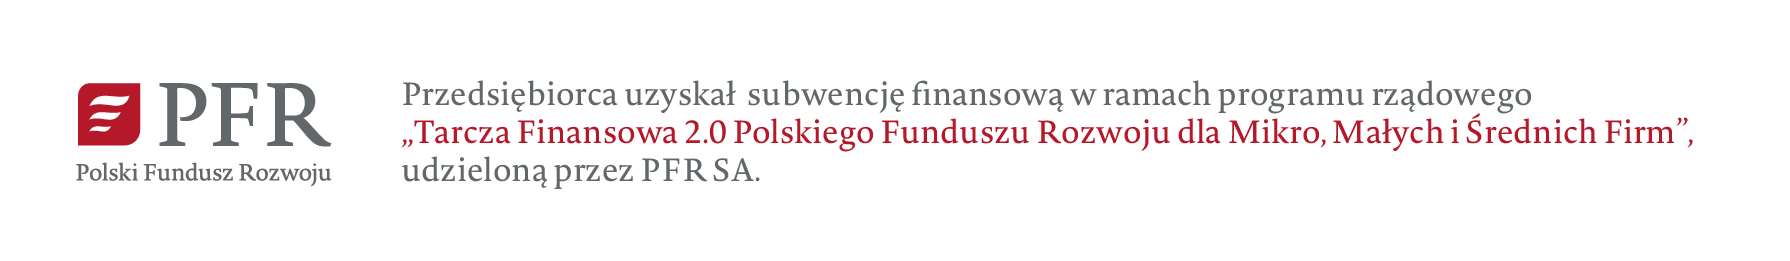 logo Polski Fundusz Rozwoju